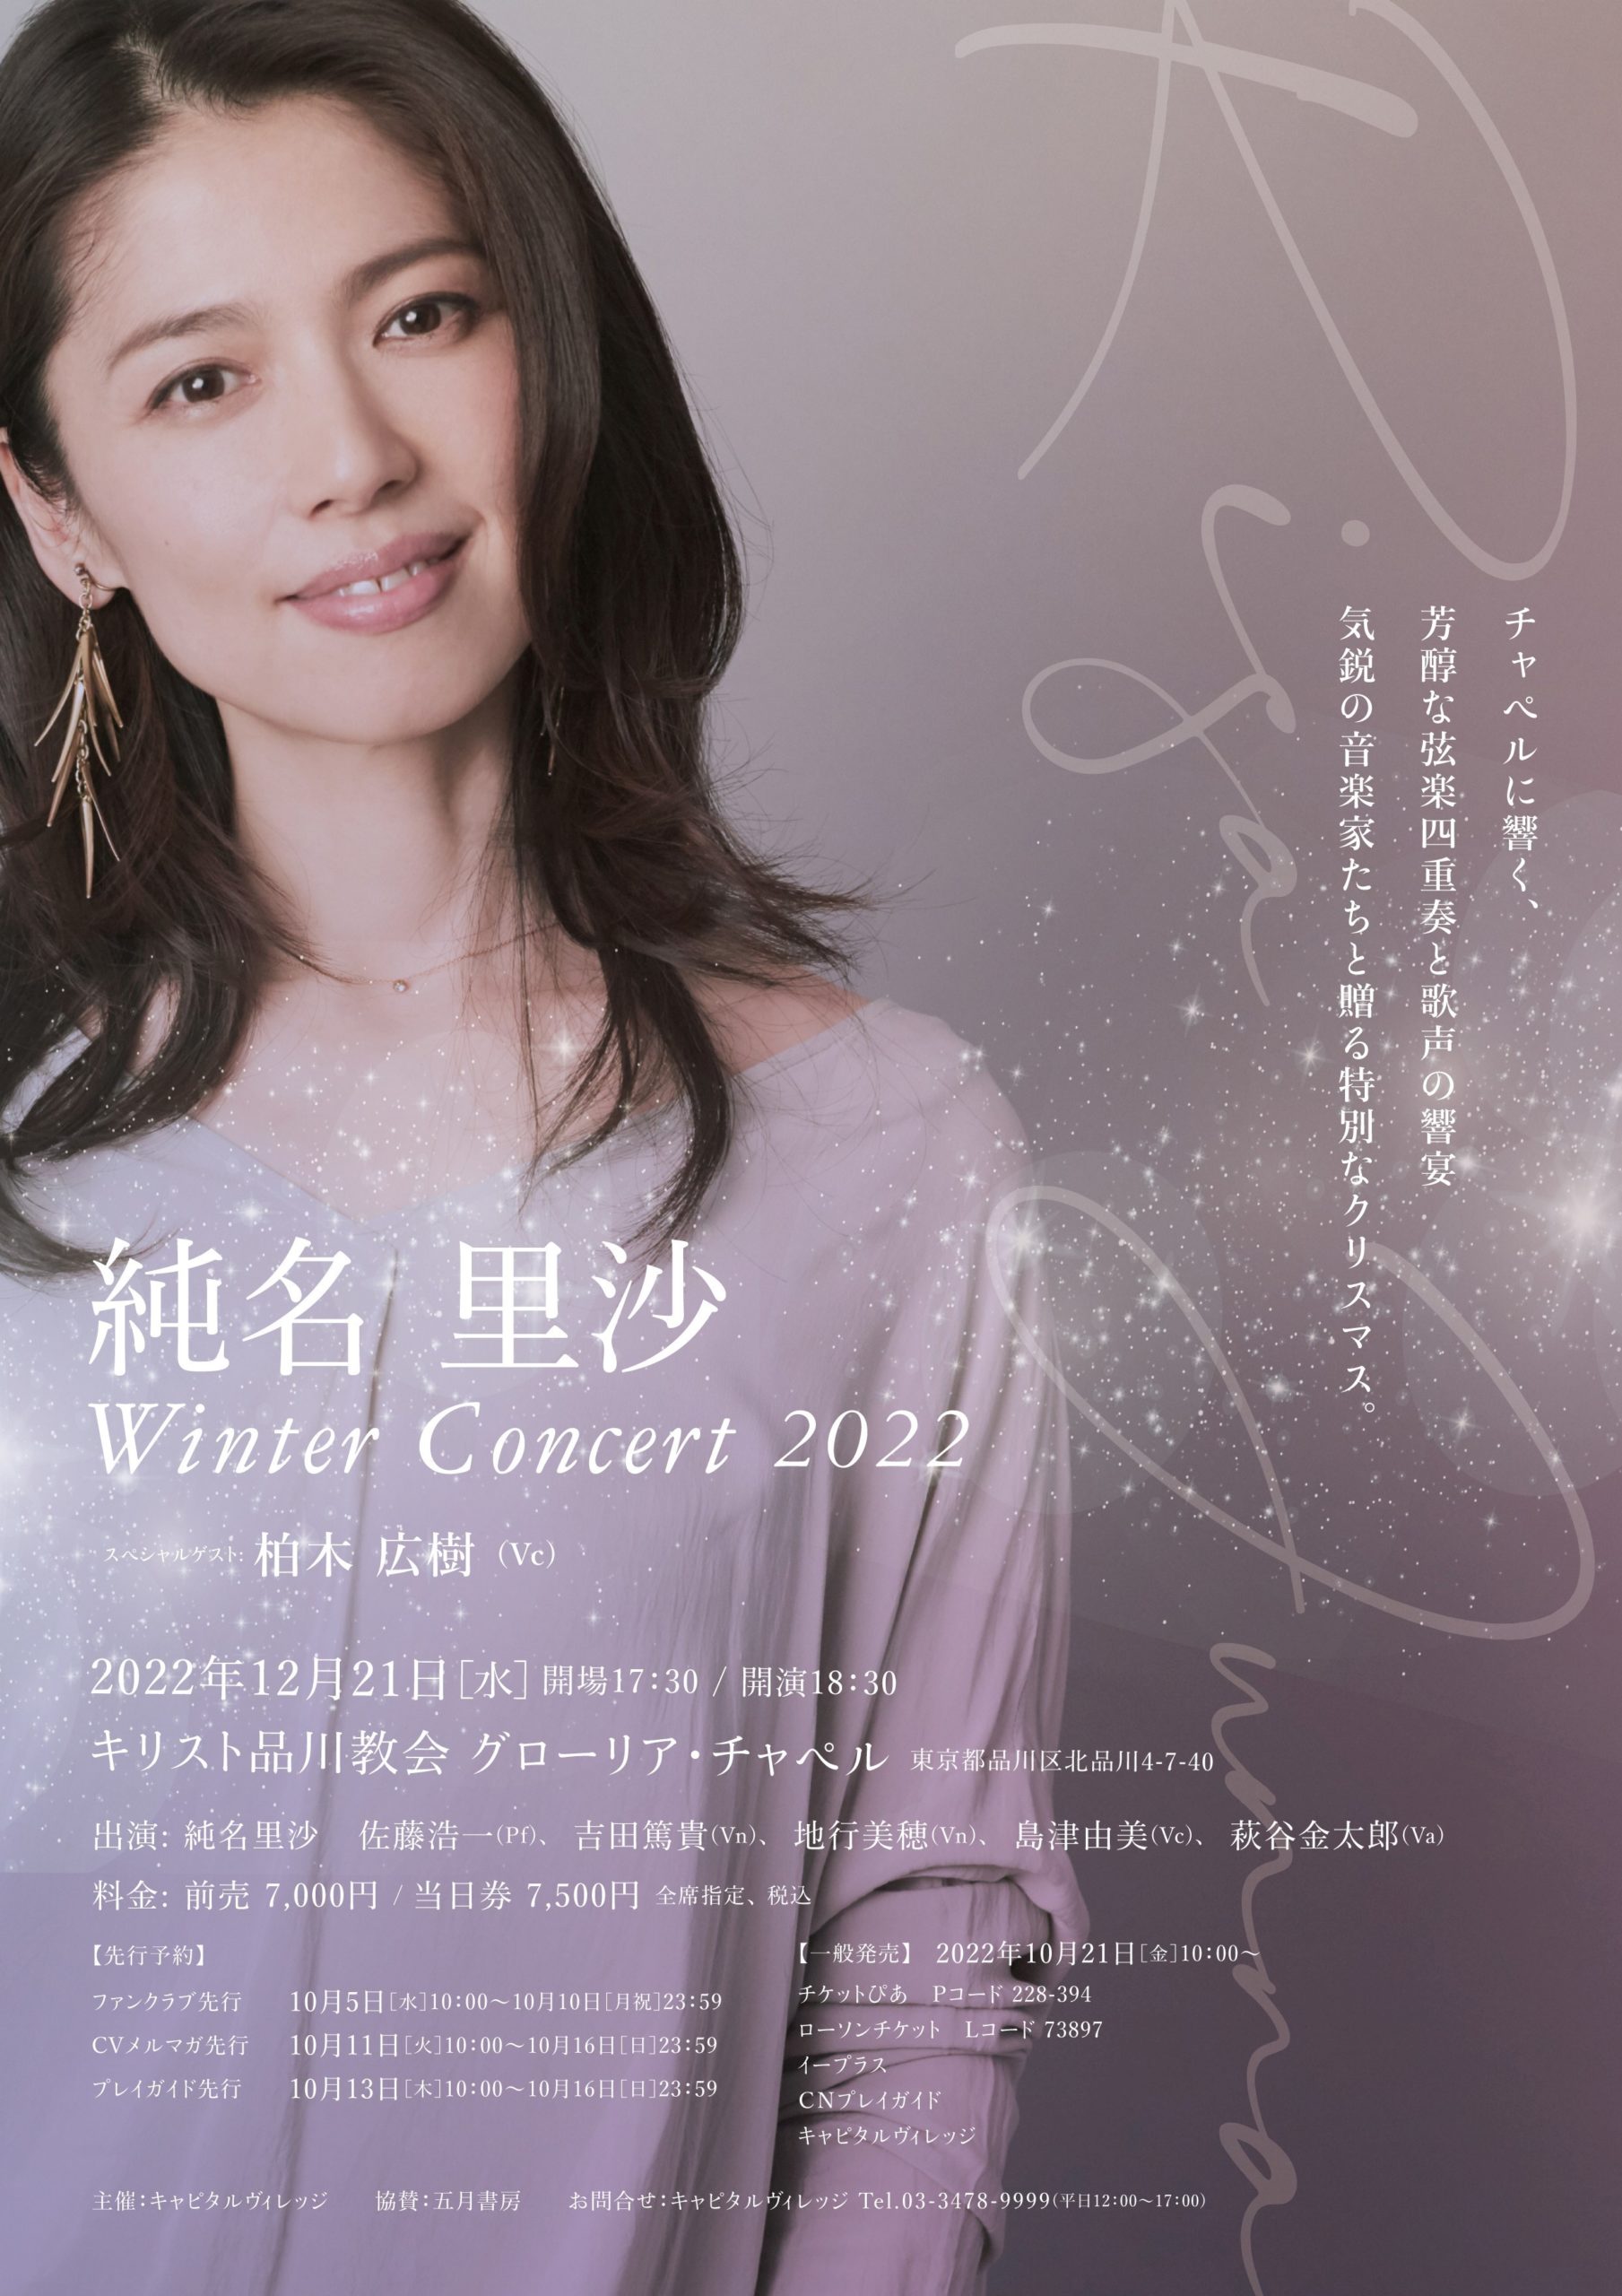 純名里沙 Winter Concert 2022 – 柏木広樹 Hiroki Kashiwagi [Cellist] Official Site